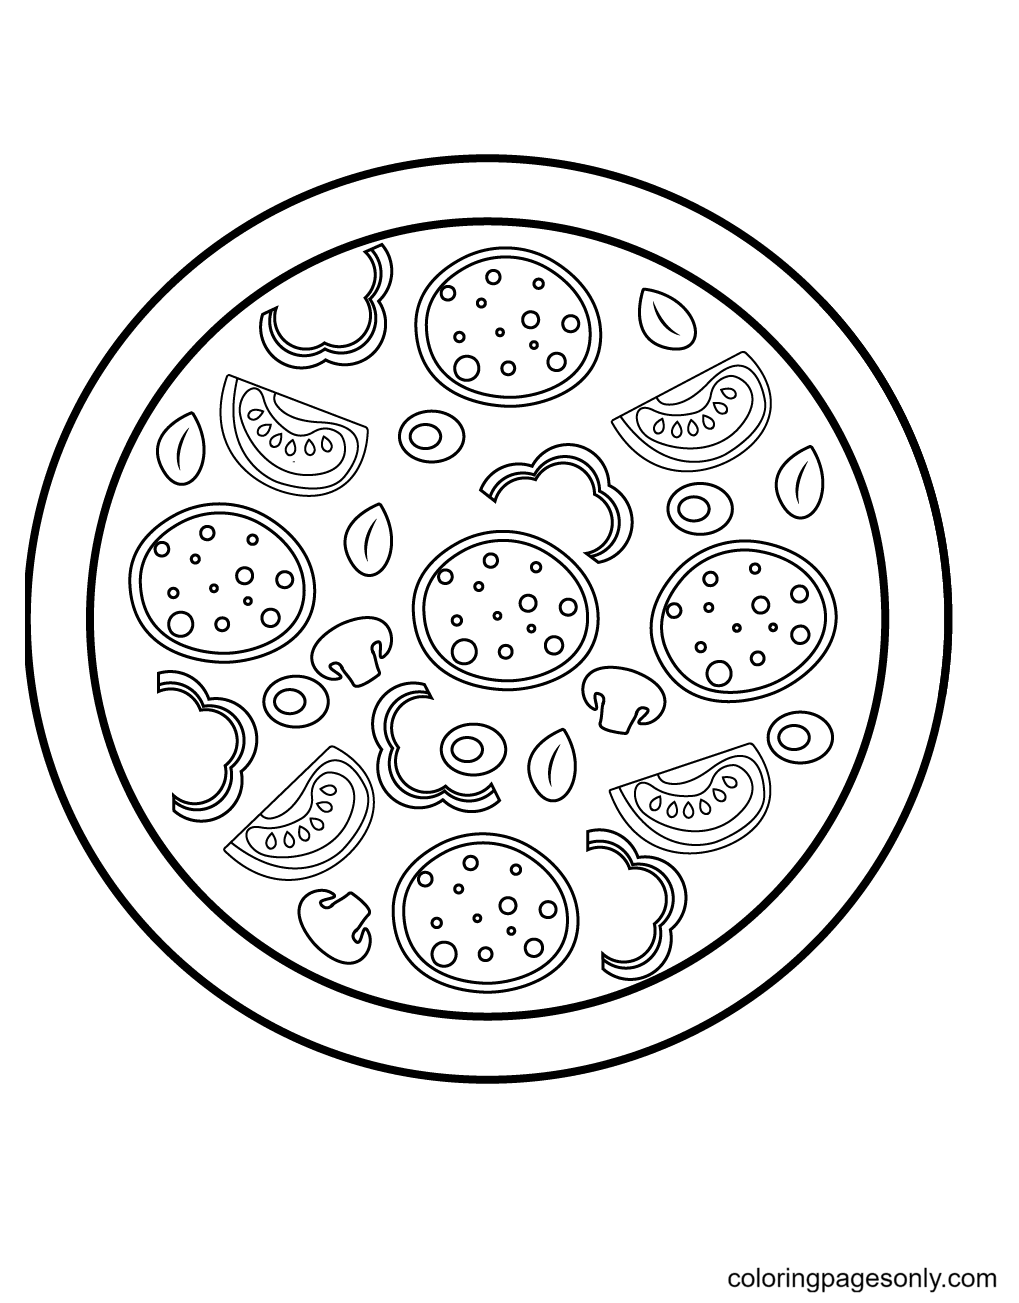 Dibujo de Pizza con pepperonis, tomates, aceitunas, pimientos y champiñones para colorear